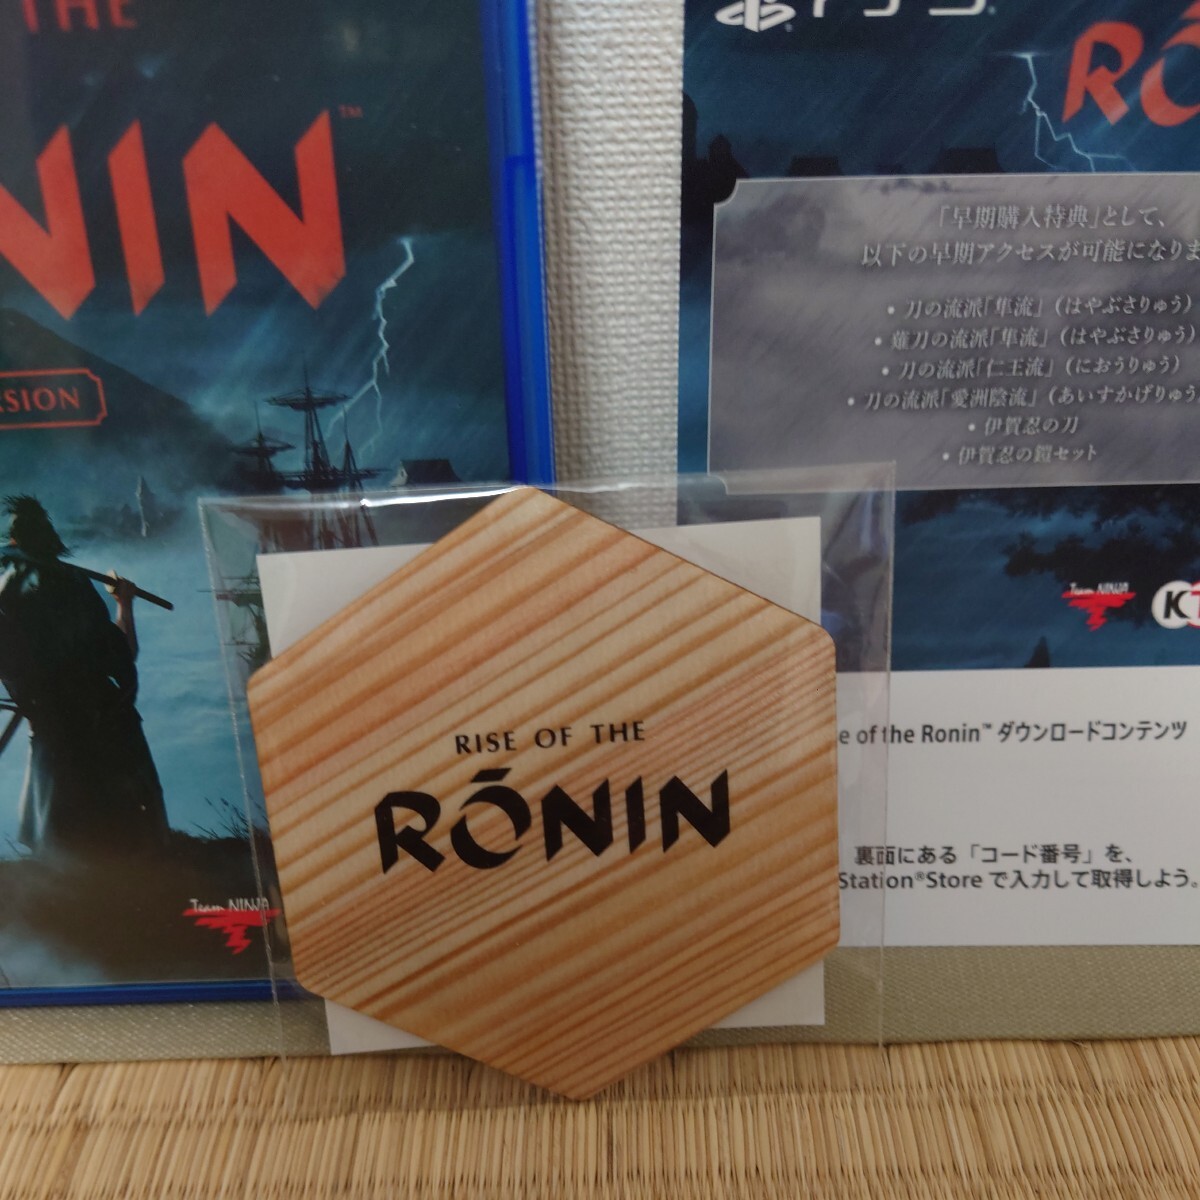 美品PS5 Rise of the Ronin Z version ライズオブザローニン 早期購入特典ダウンロードコードとゲオオリジナル予約特典木製コースター付き_ゲオ特典コースターは未開封です。